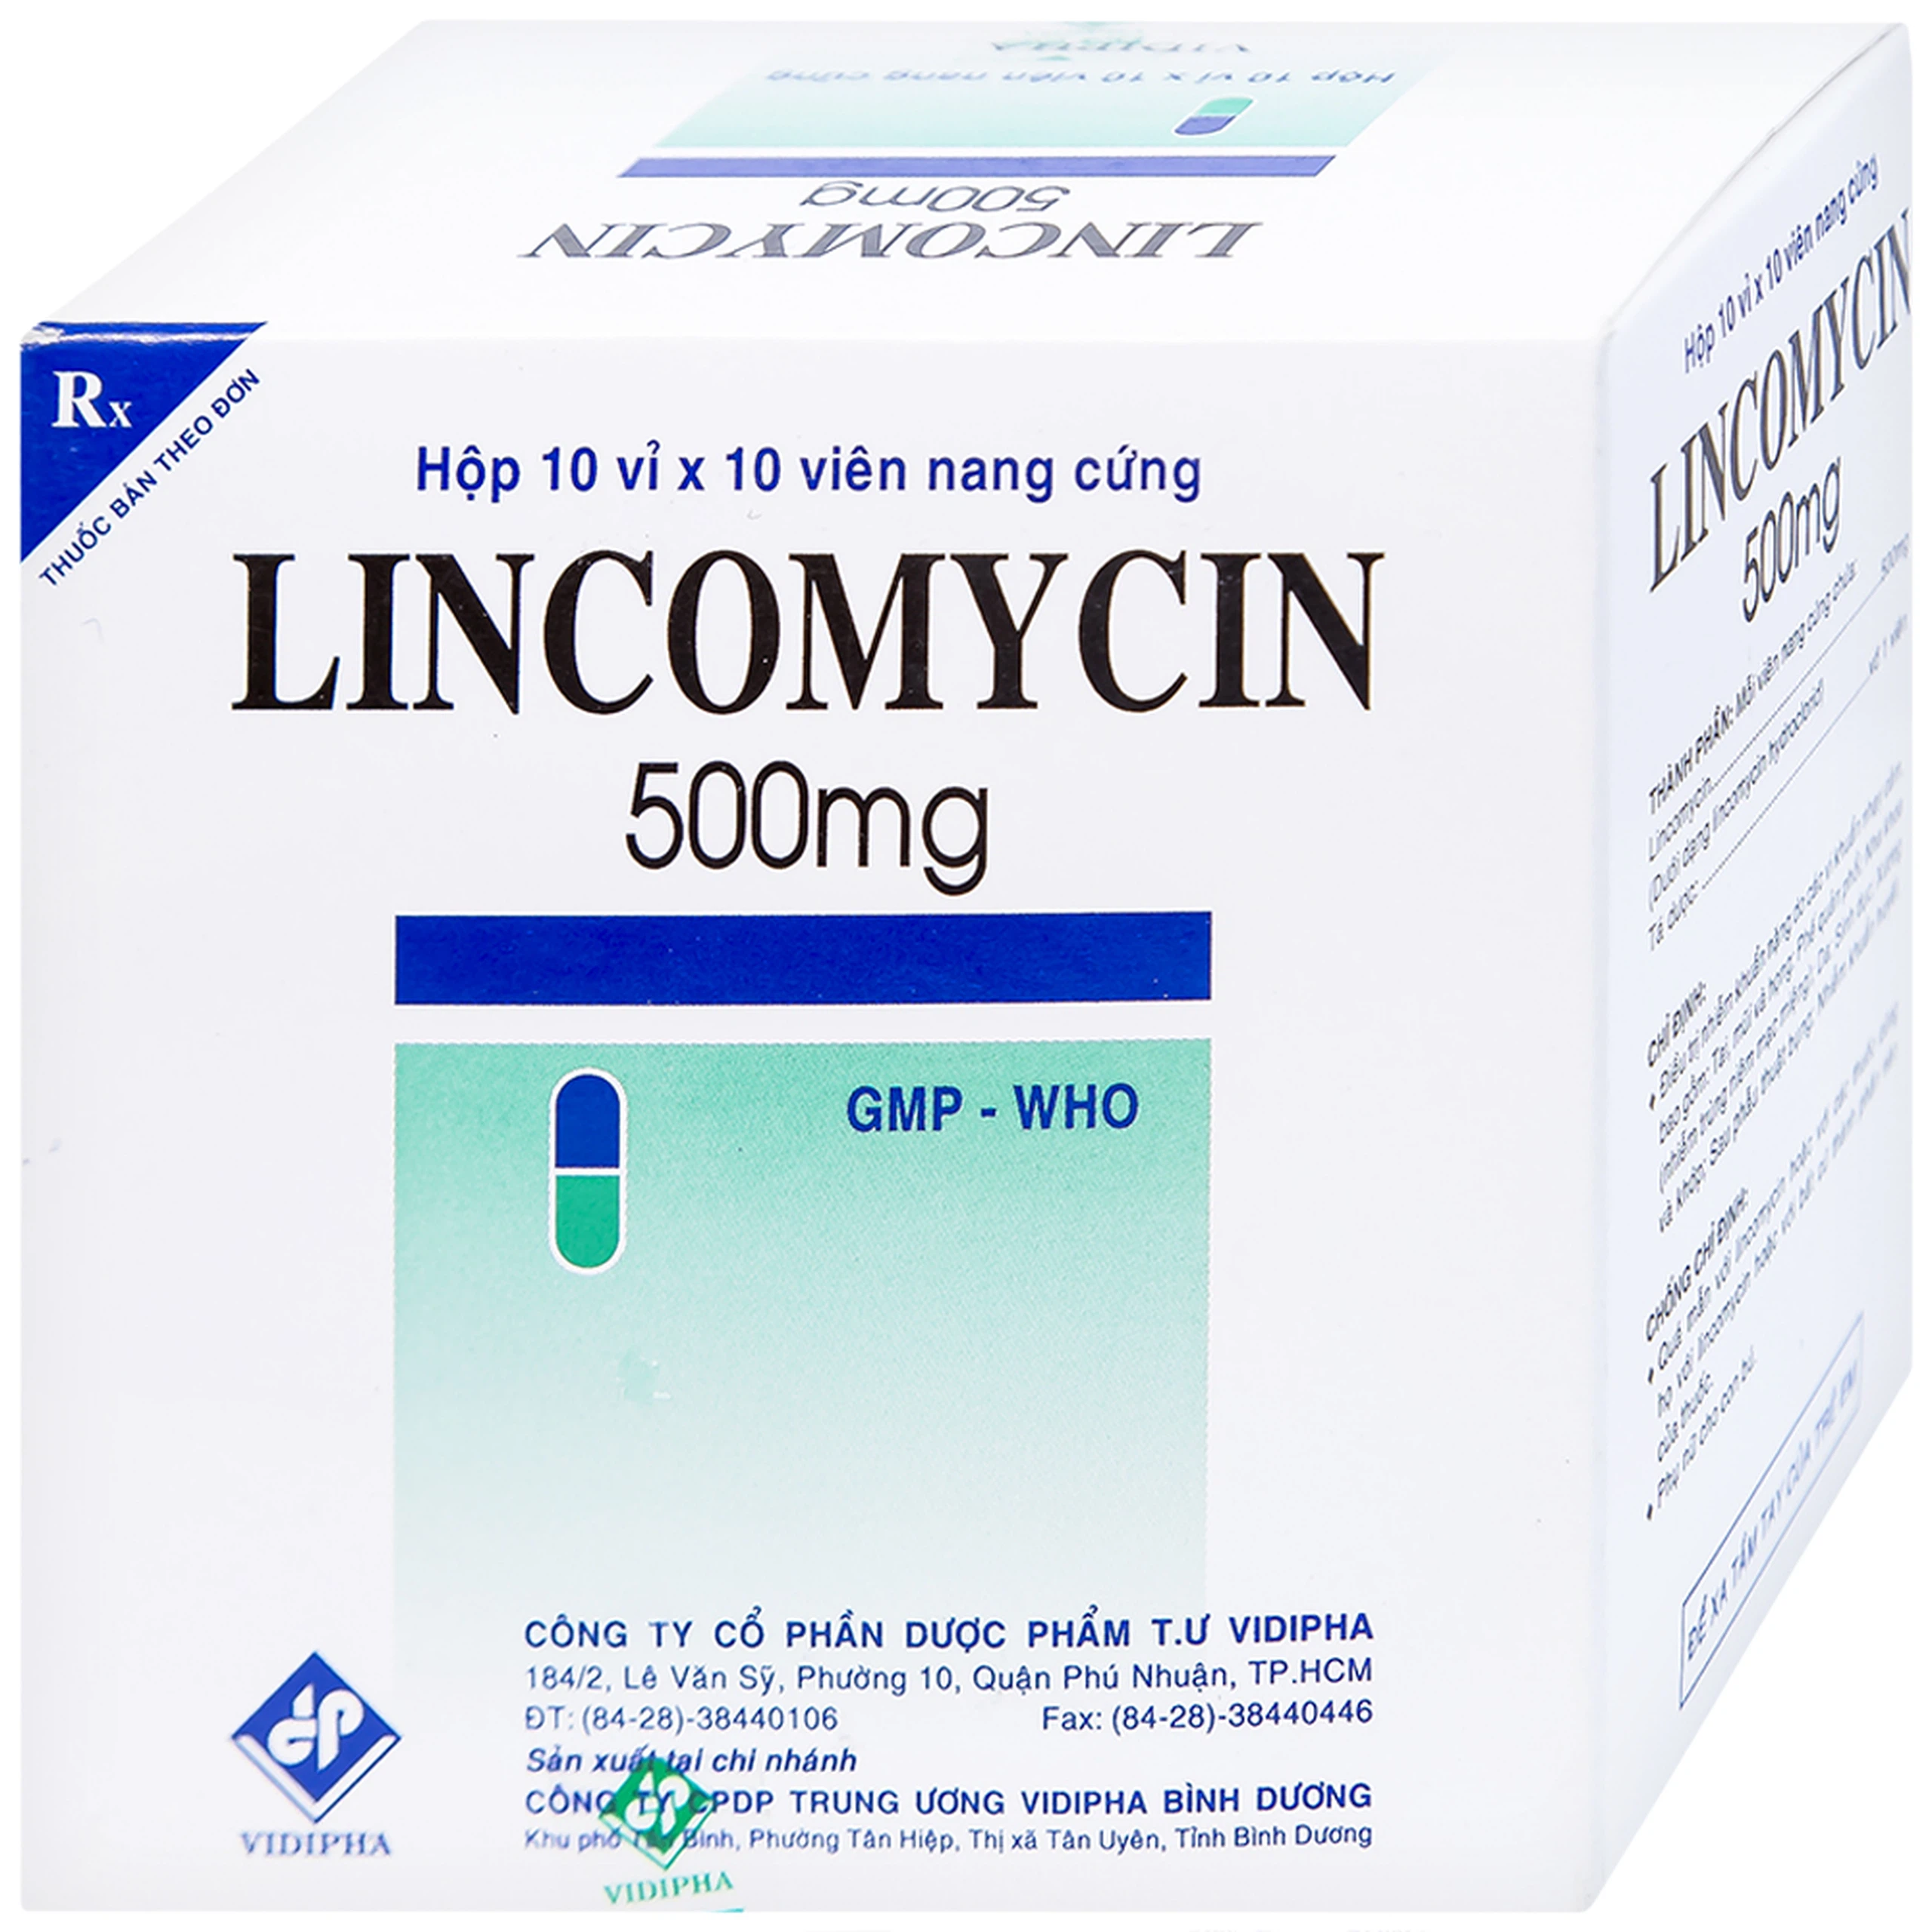 Thuốc Lincomycin 500mg Vidipha điều trị nhiễm khuẩn tai mũi họng, phế quản, phổi (10 vỉ x 10 viên)